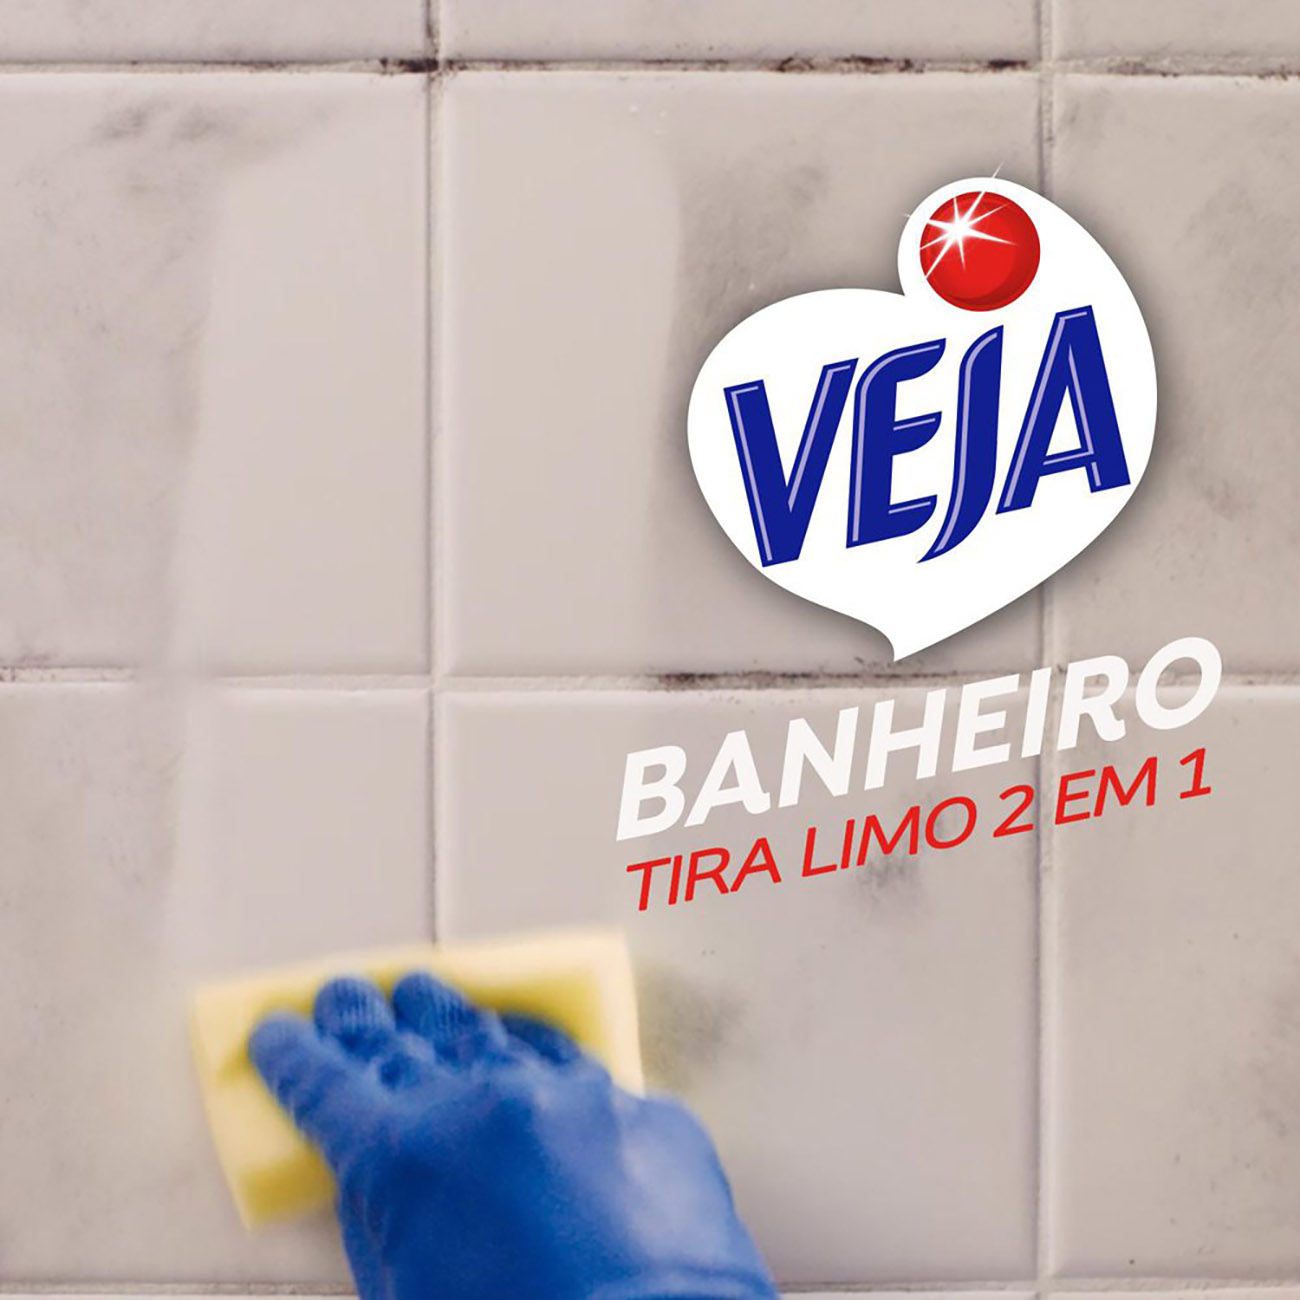 Limpador Banheiro Veja X14 Tira Limo Squeeze 500mL com 20% de desconto